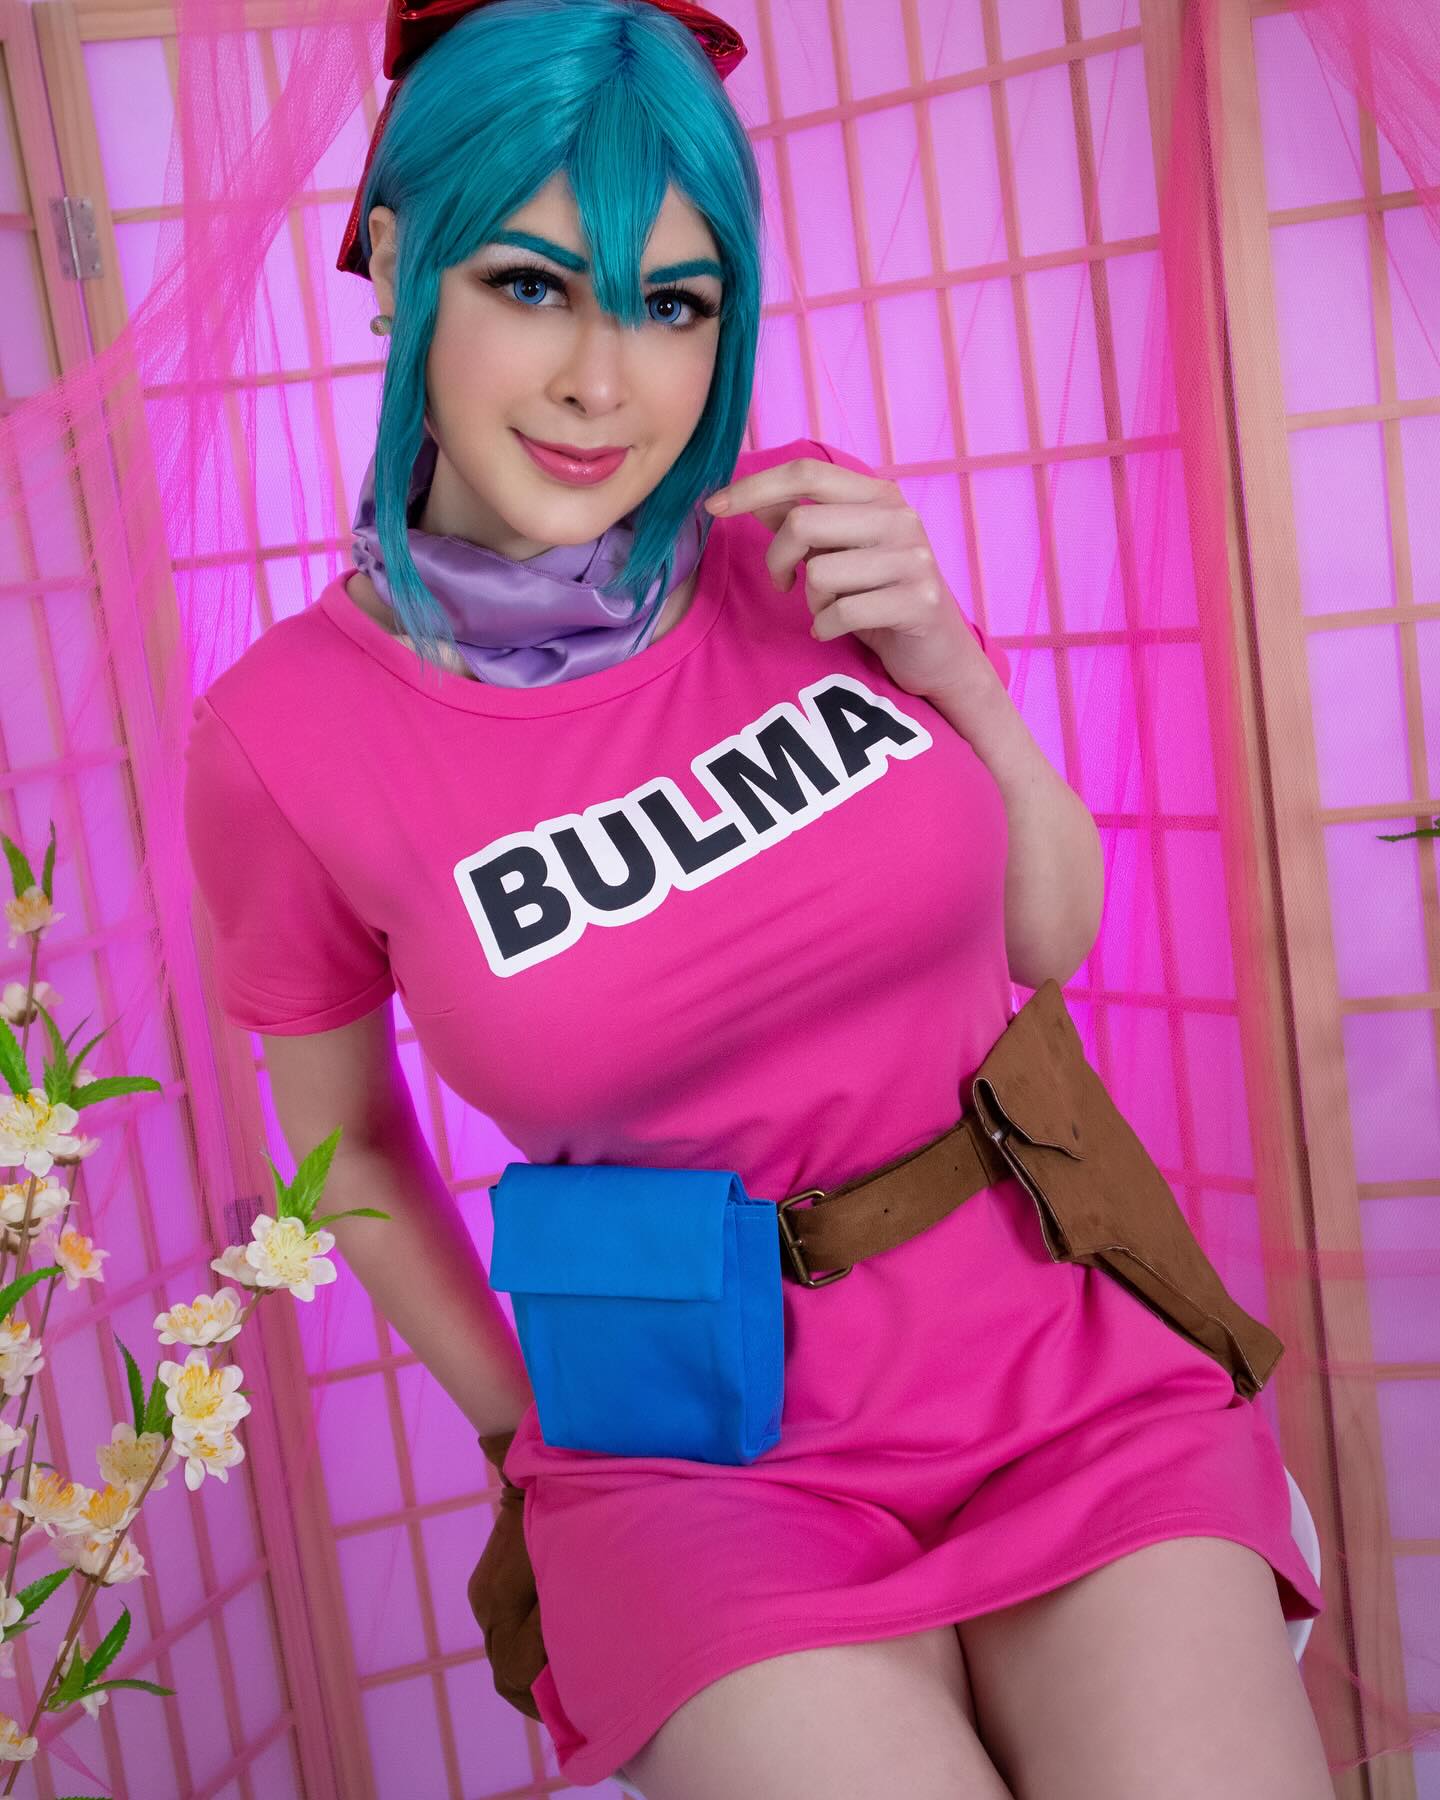 Muchos la pidieron y aquí la tienen!💜
Bulma~✨.
Espero les guste tanto como a mi hacer este set🤍.
•
•
•
•
#fyp #bulma #bulmabriefs #dragonball #dragonballz #waifu #animegirl #anime #otaku #waifumaterial #otakugirl #cosplay #cosplayer #cosplaygirl